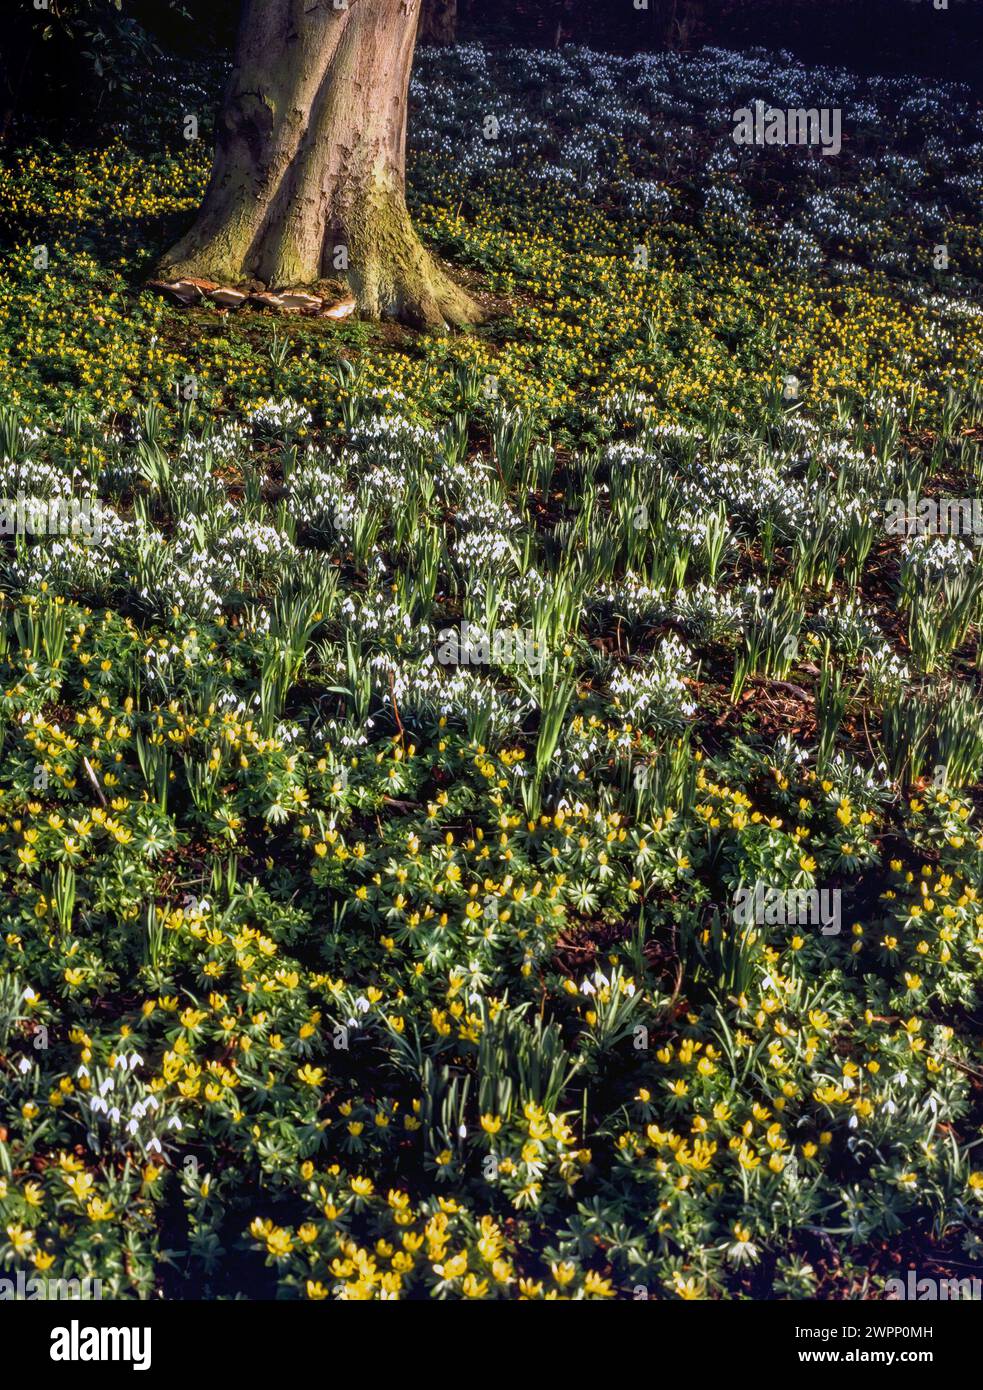 Un tapis de masses de fleurs jaunes aconites et blanches en forme de goutte de neige (Eranthis & Galanthus) poussant autour de la base d'un tronc d'arbre, février, Angleterre, Royaume-Uni Banque D'Images